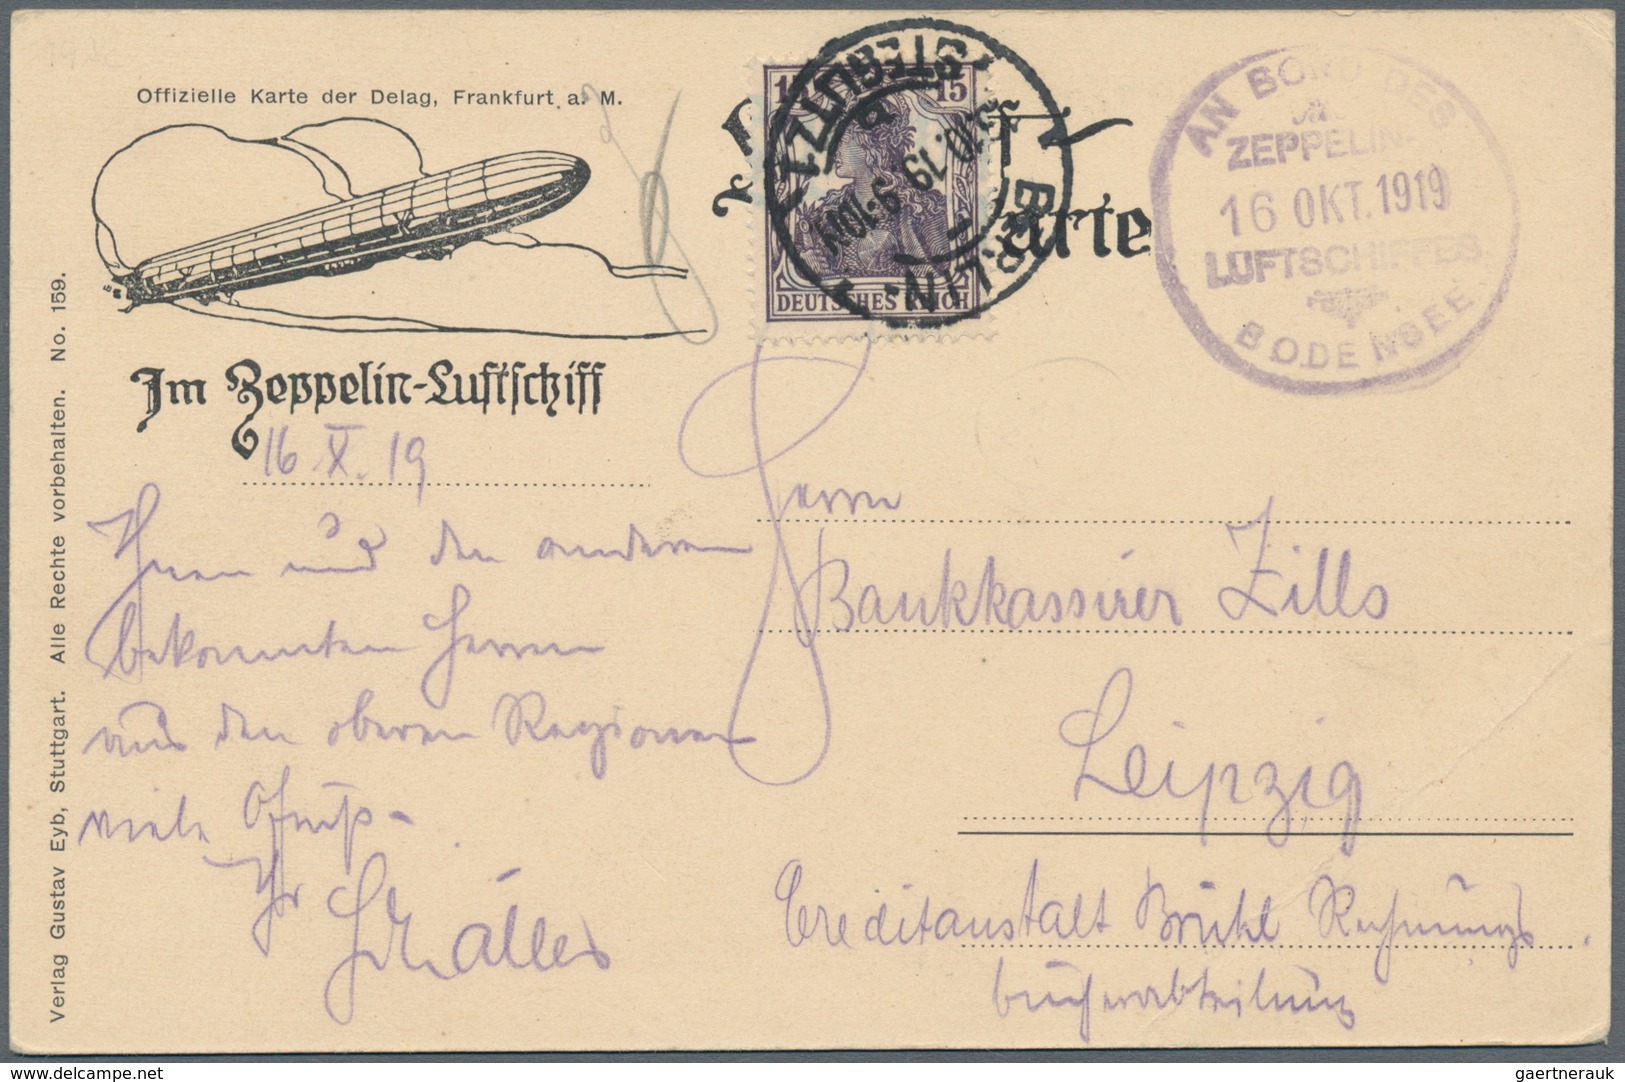 00637 Zeppelinpost Deutschland: 1919, LZ 120 Bodensee, Delag Card From "Berlin-Steglitz" With Board Cancel - Poste Aérienne & Zeppelin